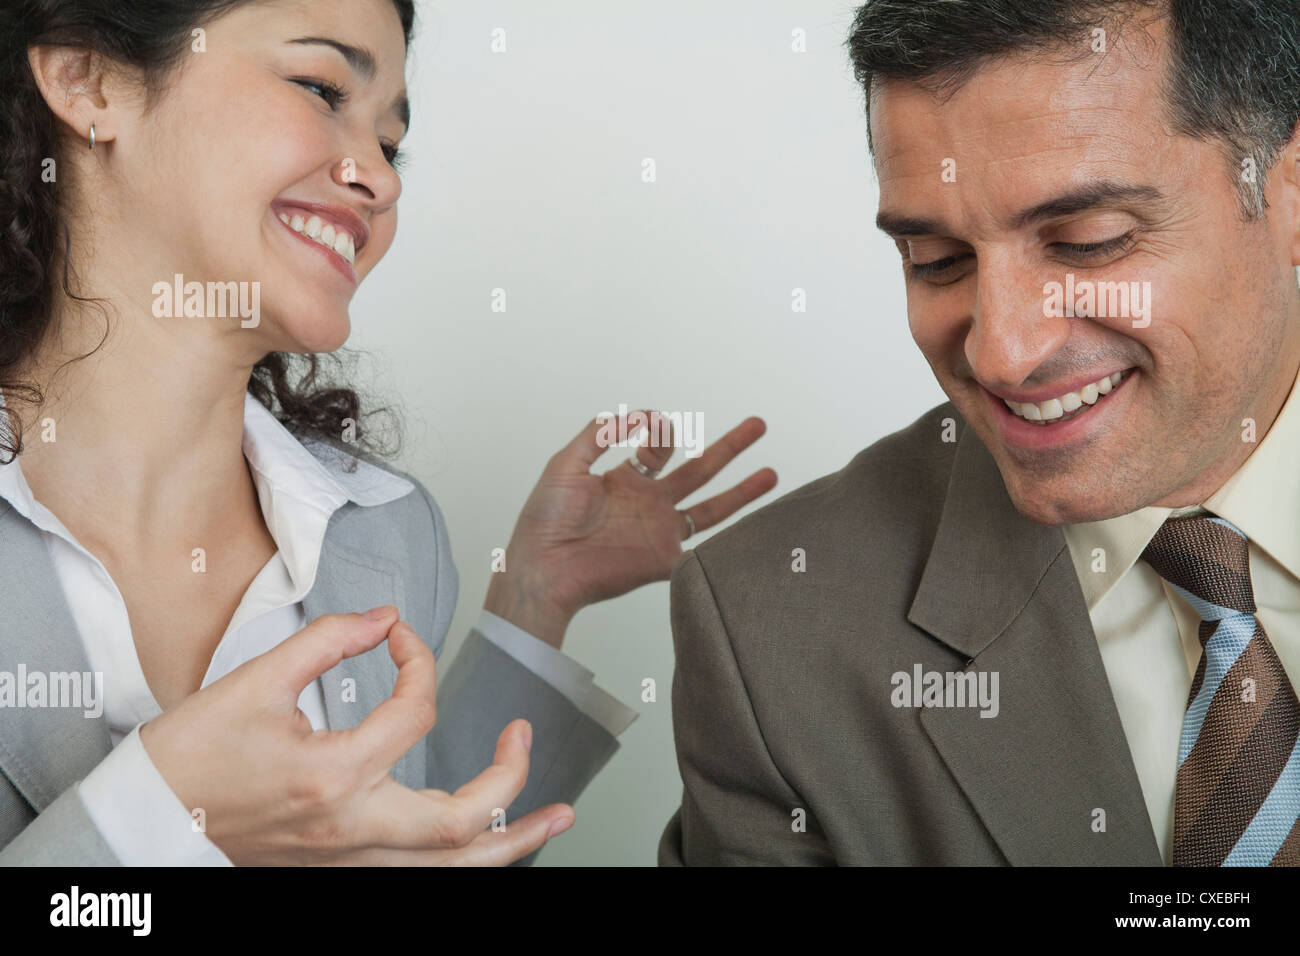 Business Associates ridere insieme, donna tenendo le mani nel mudra Foto Stock